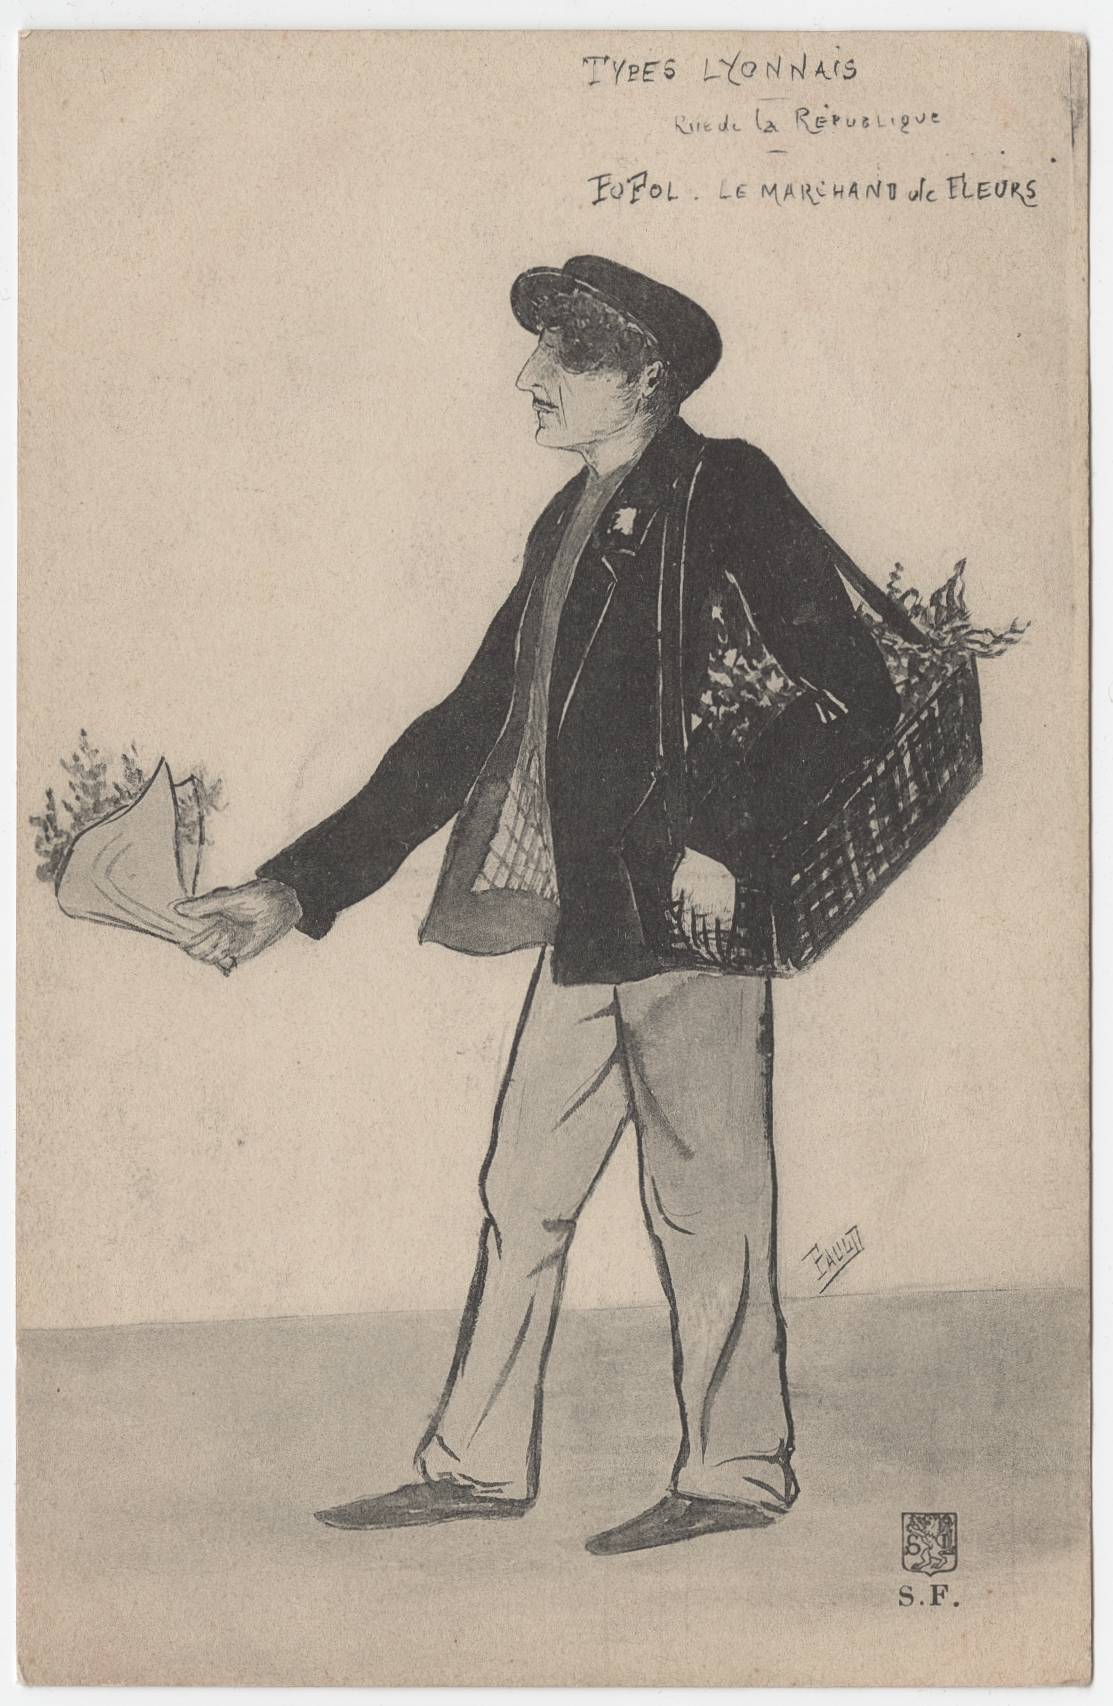 Types lyonnais - Rue de la République, Popol le marchand de fleurs : carte postale NB (vers 1910, cote : 4FI/4123)